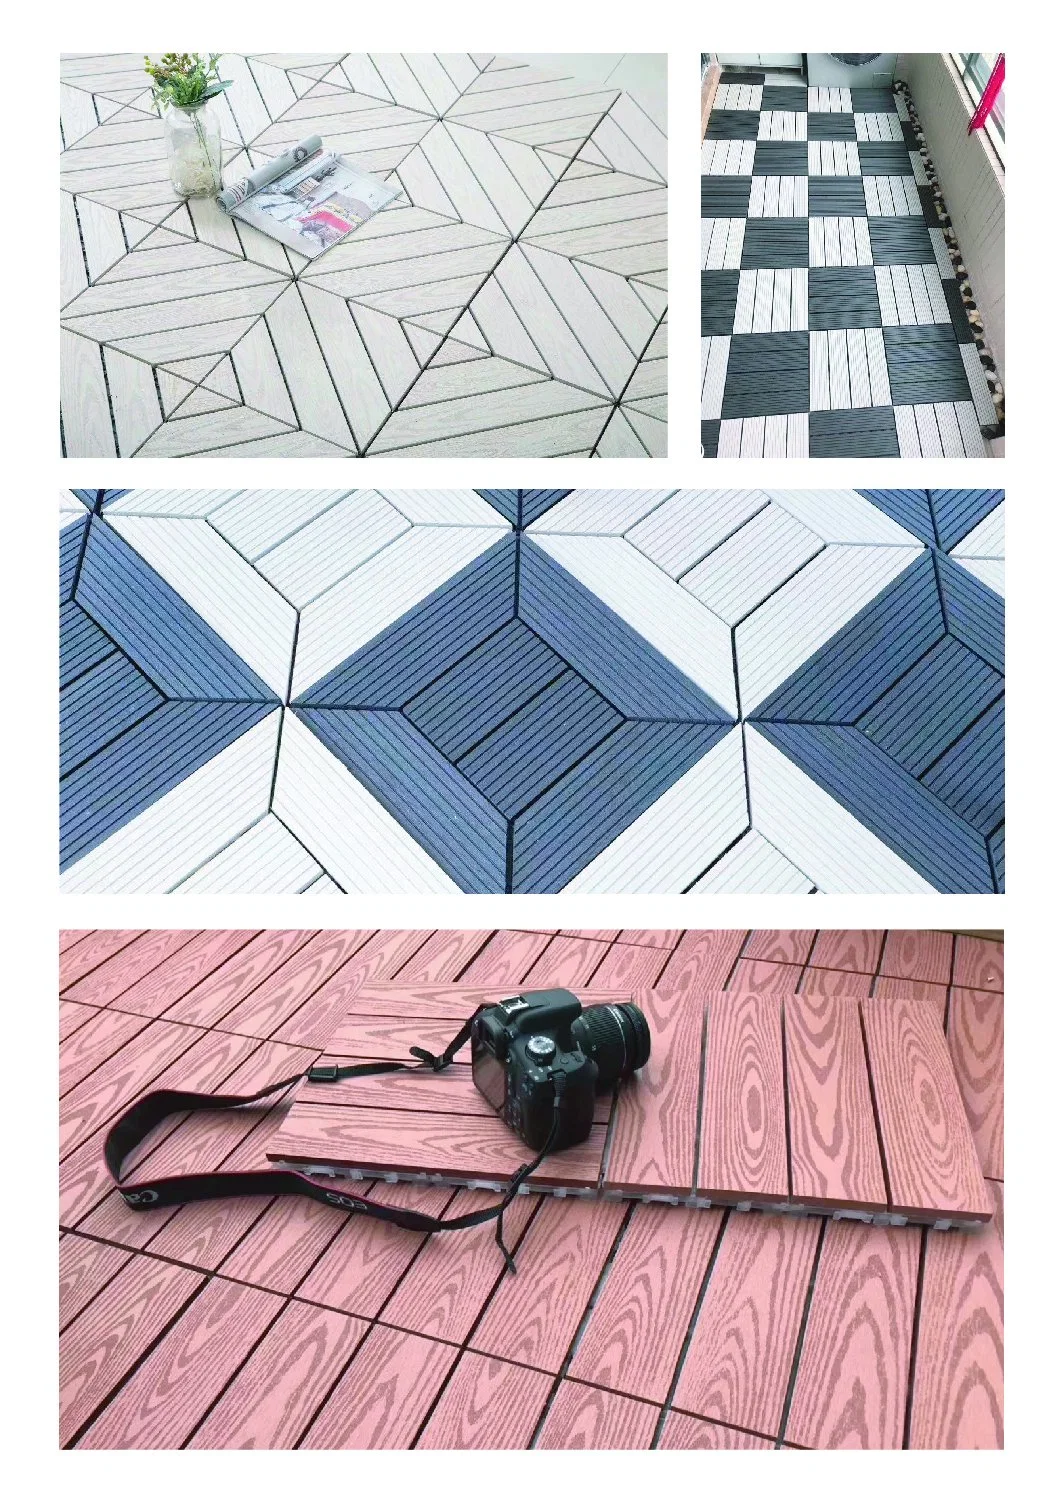 Factory Outdoor Interlocking Deck Tiles 3D Wood Grain Engineered Plastic Floor Tiles